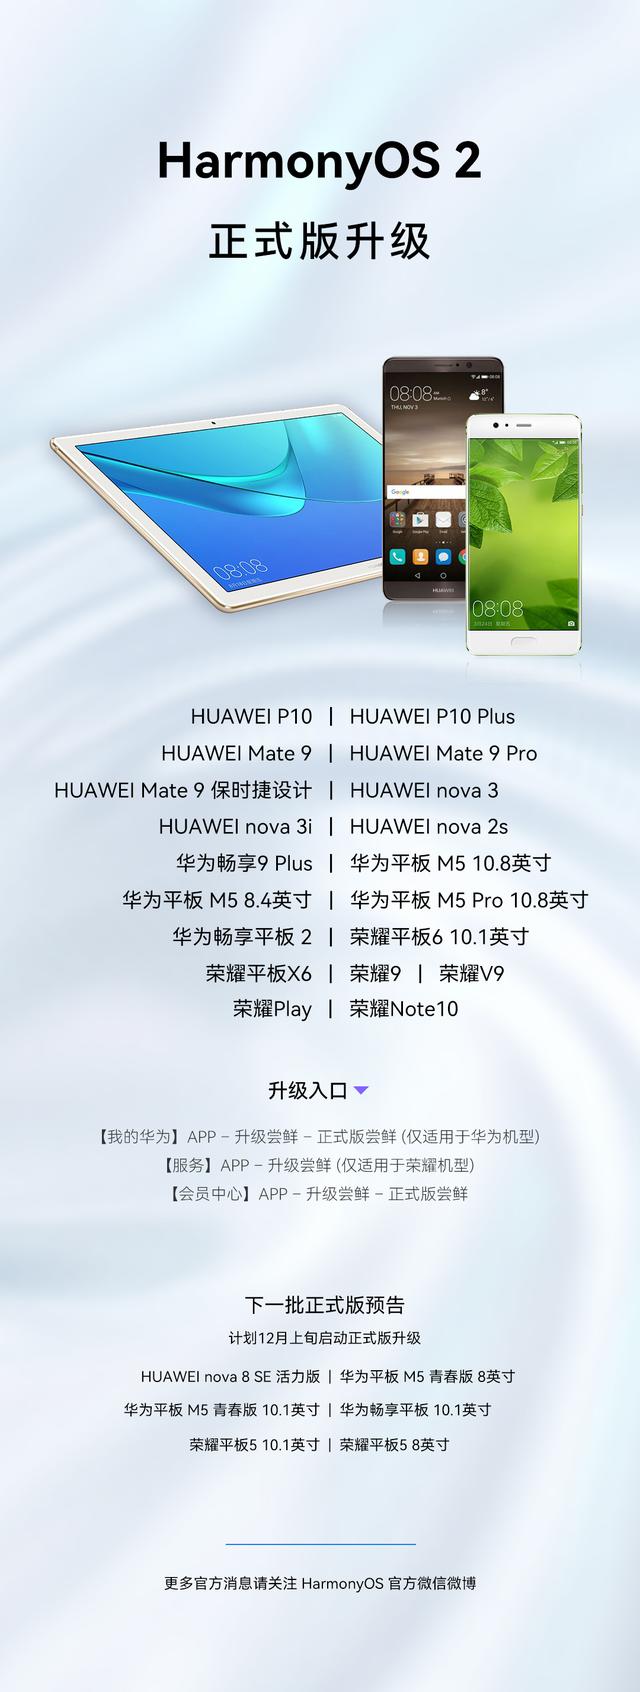 华为 Mate 9 系列等 19 款设备更新鸿蒙 HarmonyOS 2
正式版